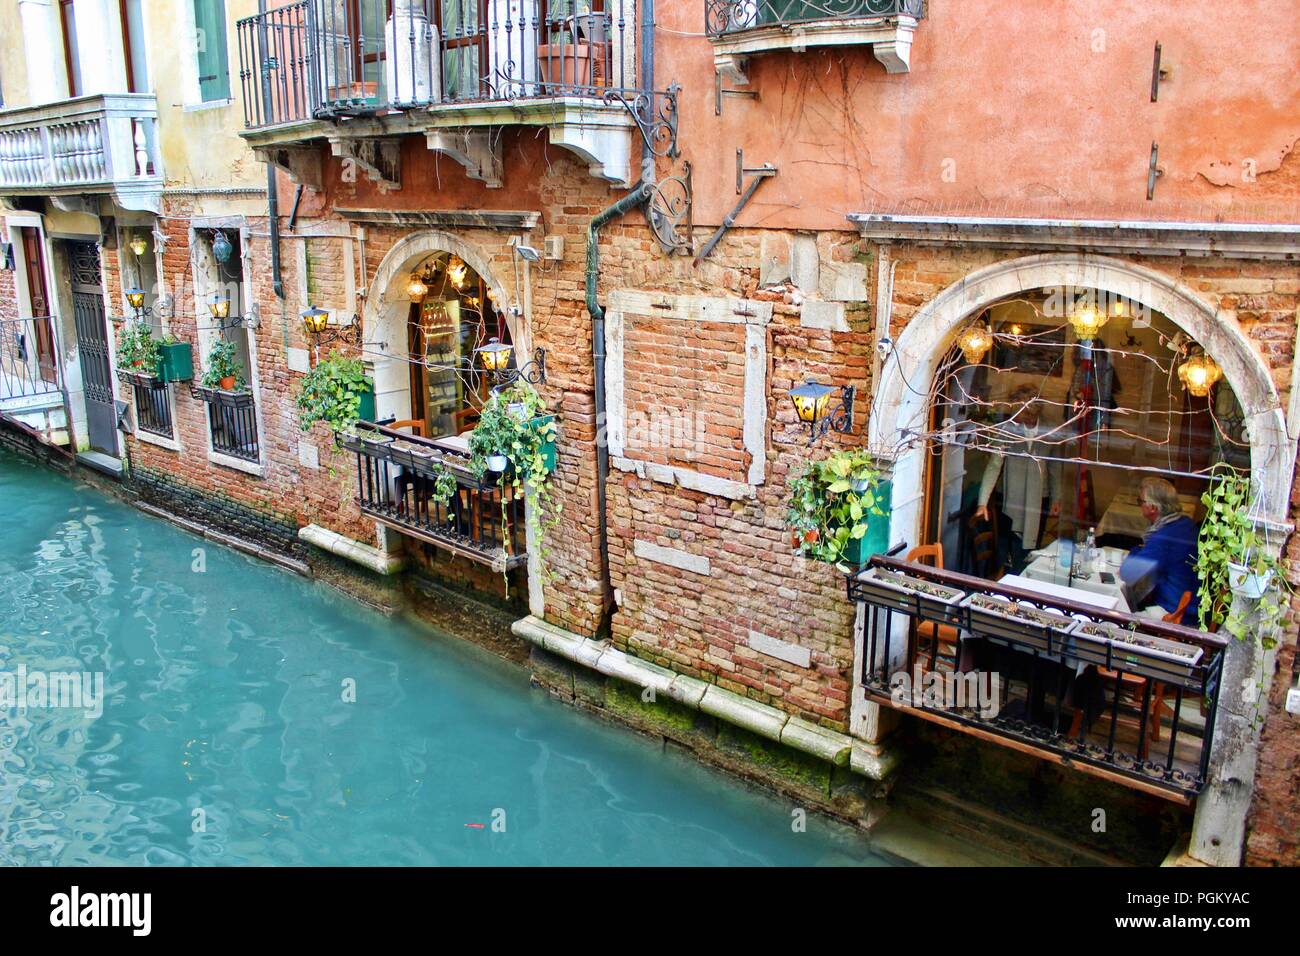 Venezia / Venice Italy, Restaurant. Stock Photo